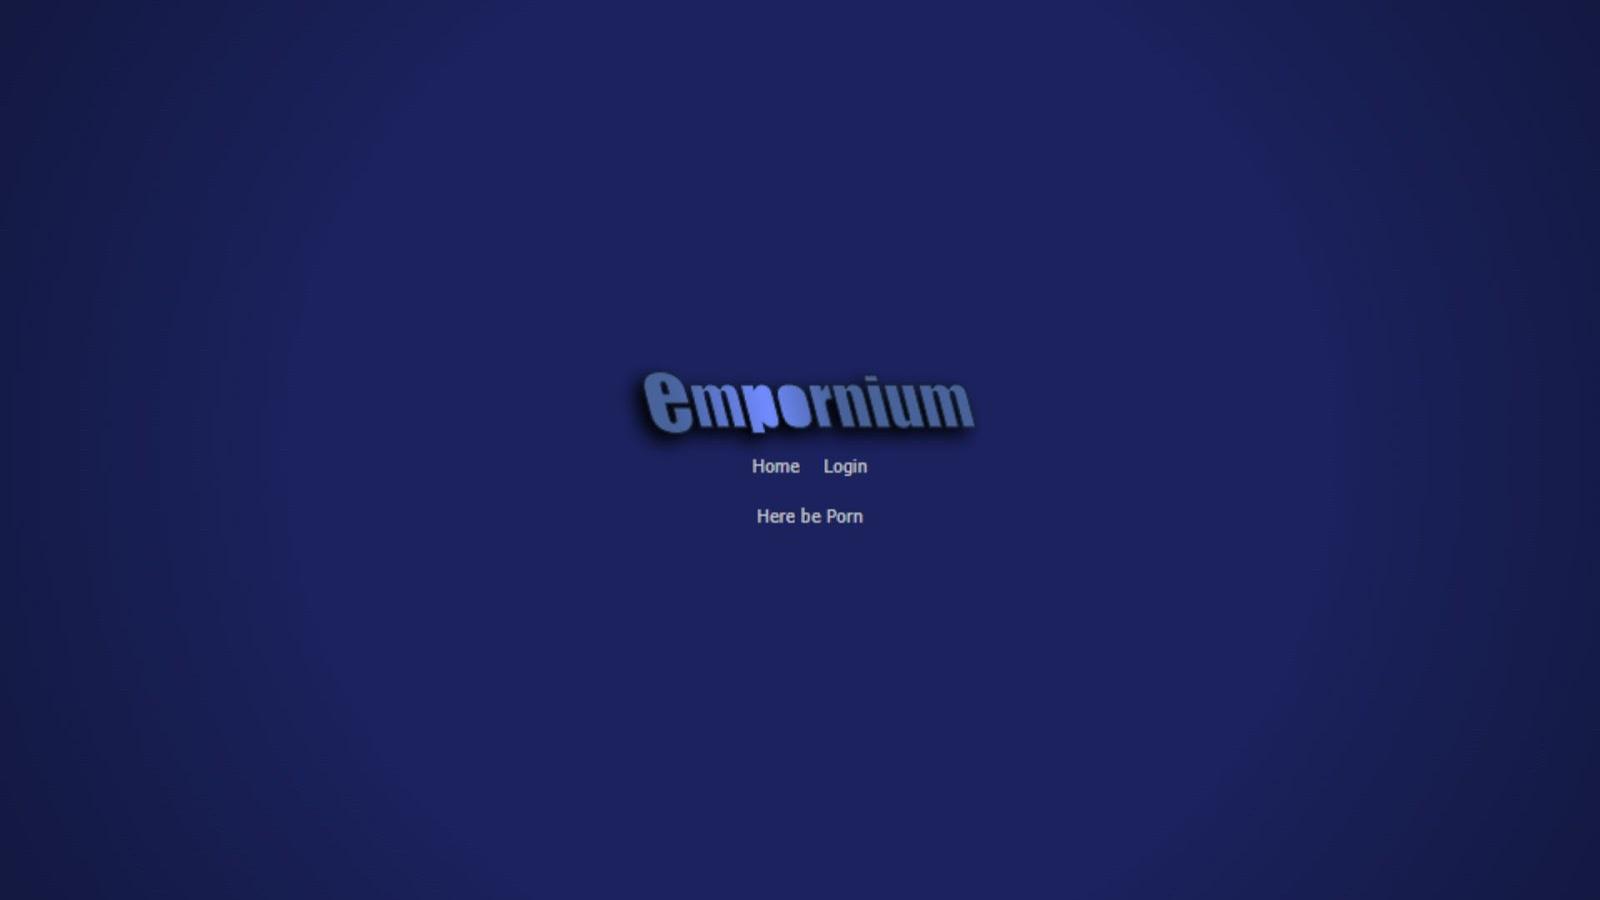 Empornium